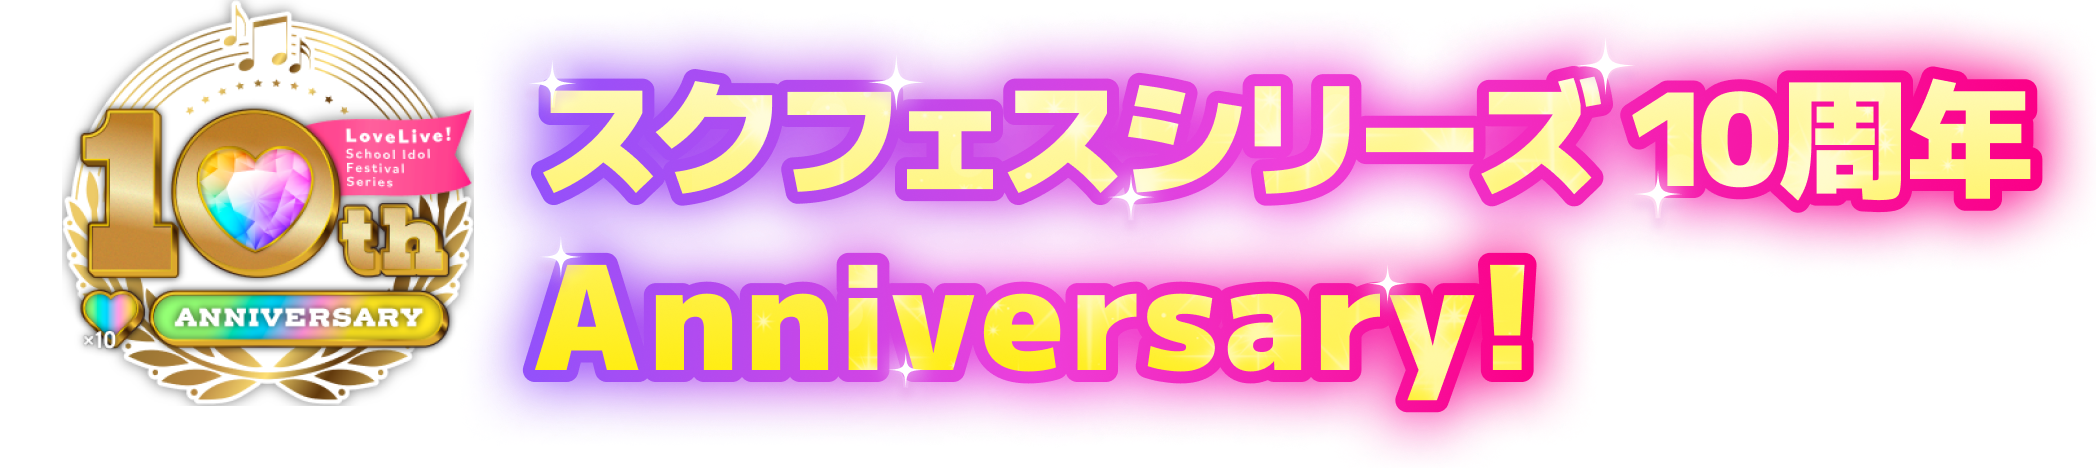 スクフェスシリーズ 10周年Anniversary!